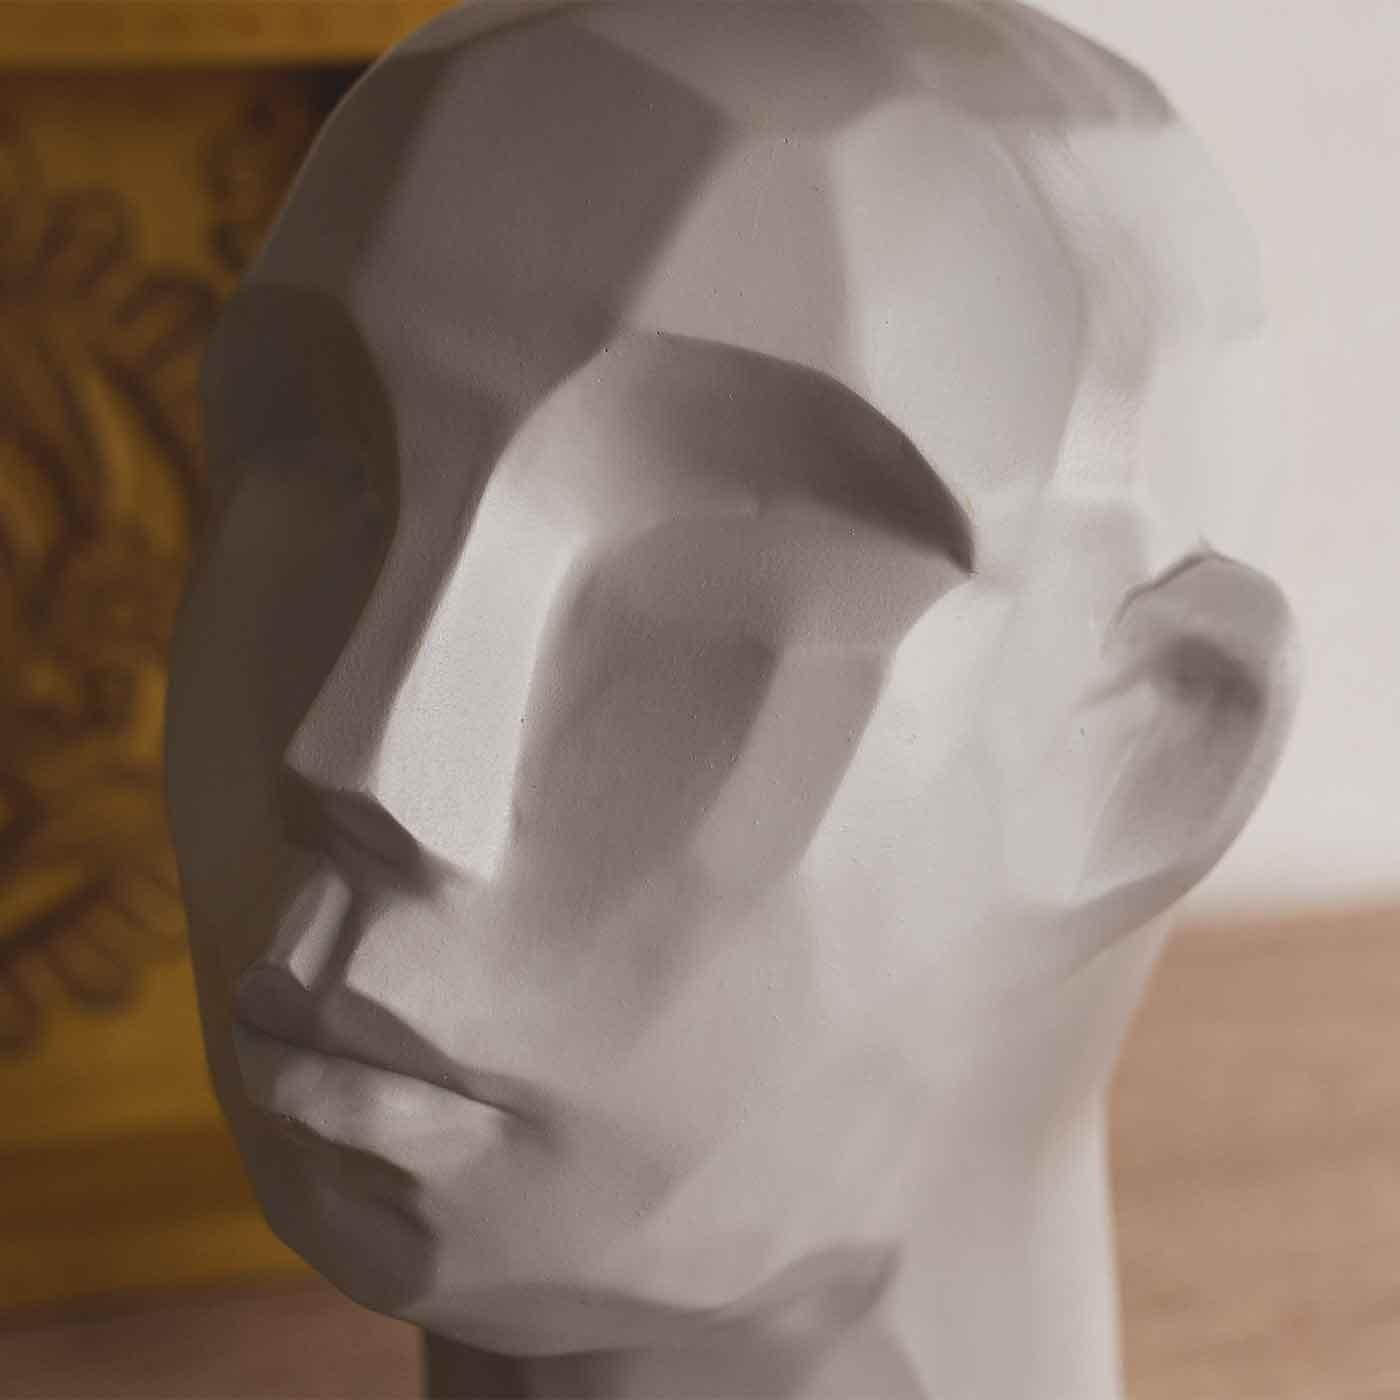 Figura busto denis gris 22cm